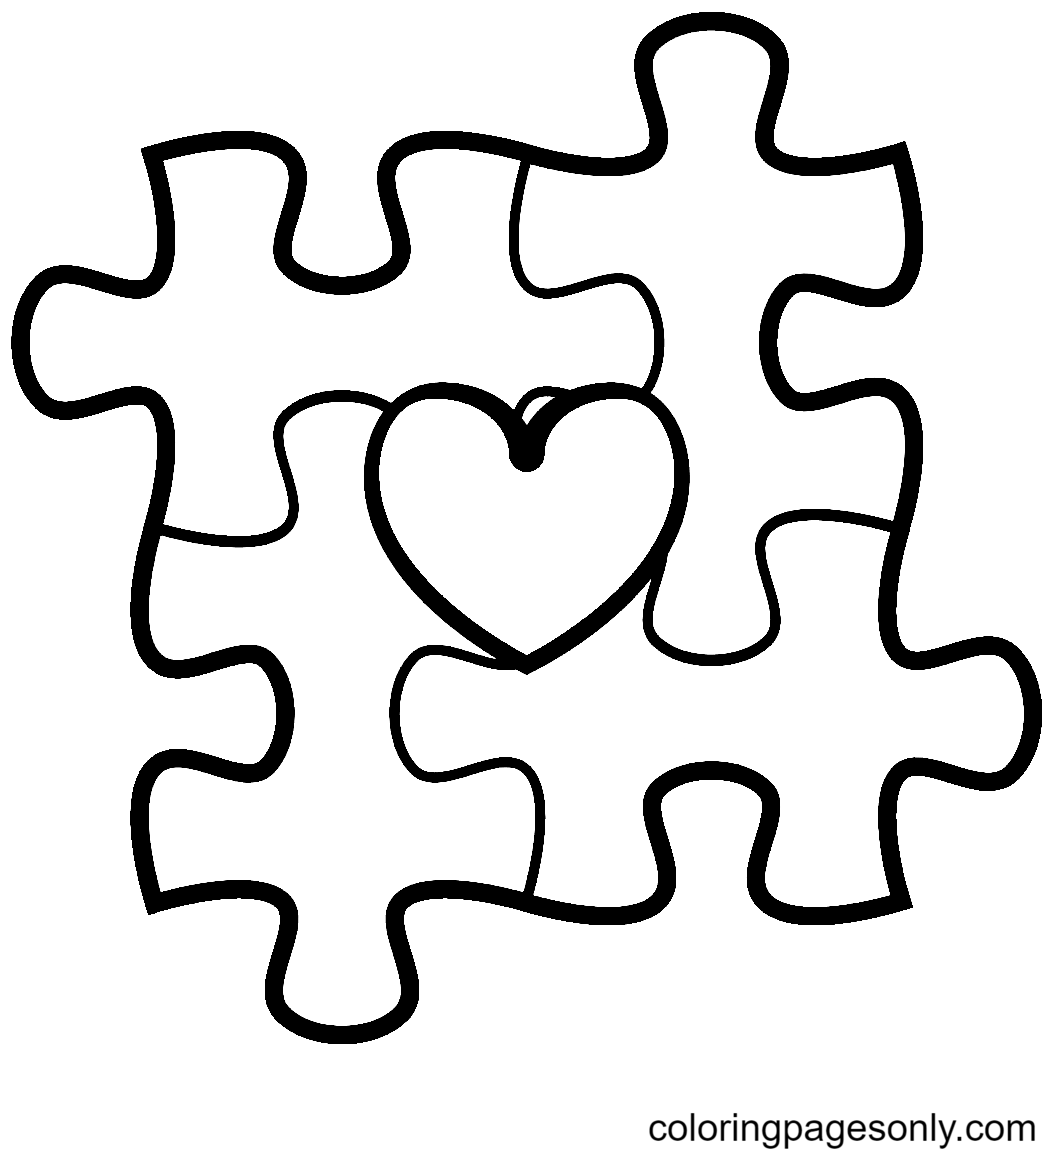 Autismus-Bewusstseins-Puzzleteile mit Herz vom Welt-Autismus-Bewusstseinstag